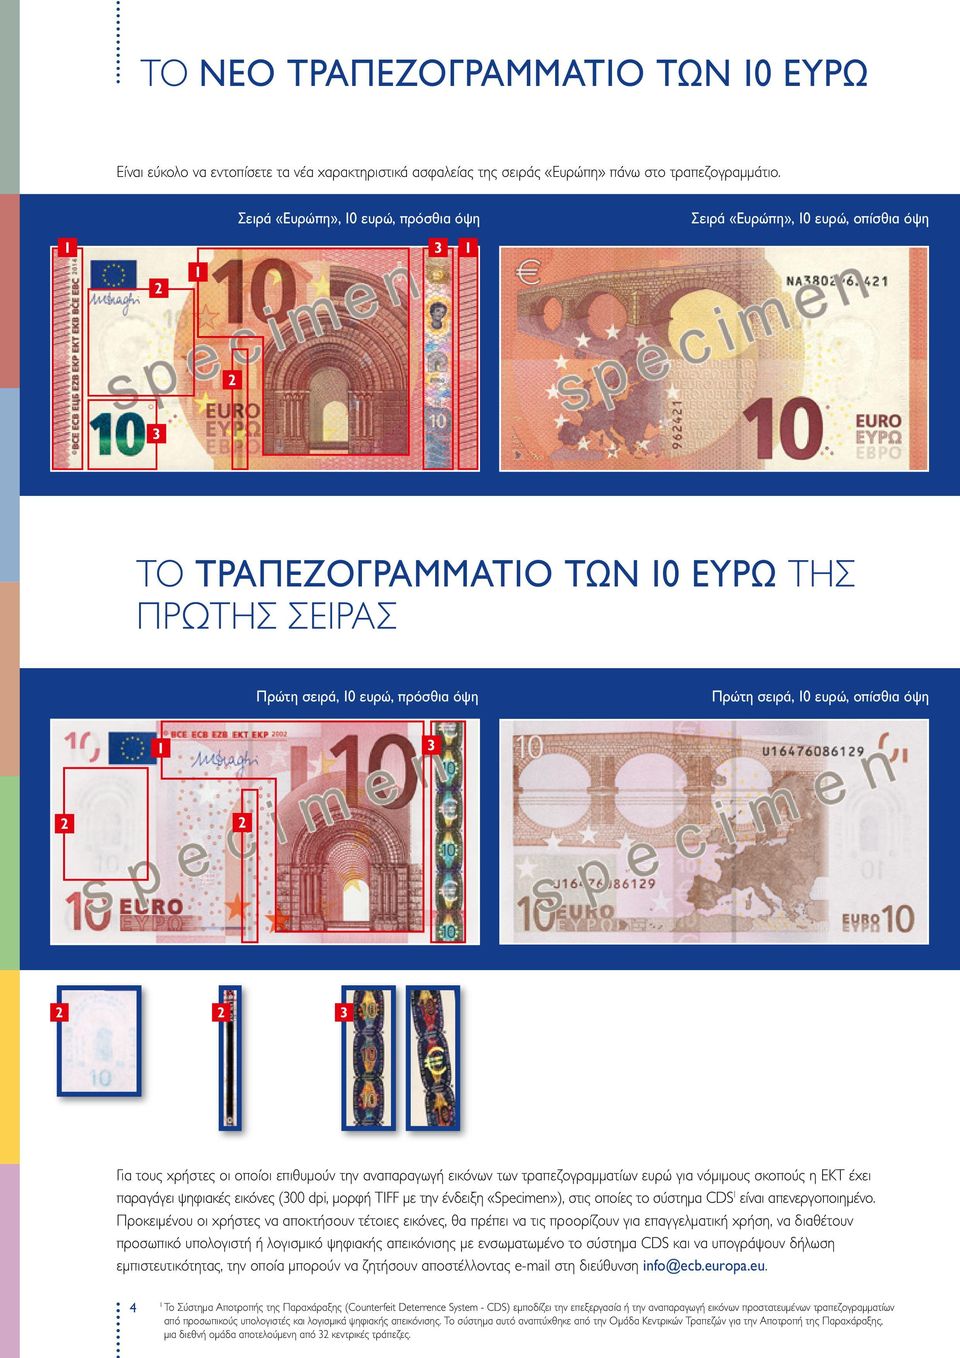 2 2 3 Για τους χρήστες οι οποίοι επιθυμούν την αναπαραγωγή εικόνων των τραπεζογραμματίων ευρώ για νόμιμους σκοπούς η ΕΚΤ έχει παραγάγει ψηφιακές εικόνες (300 dpi, μορφή TIFF με την ένδειξη